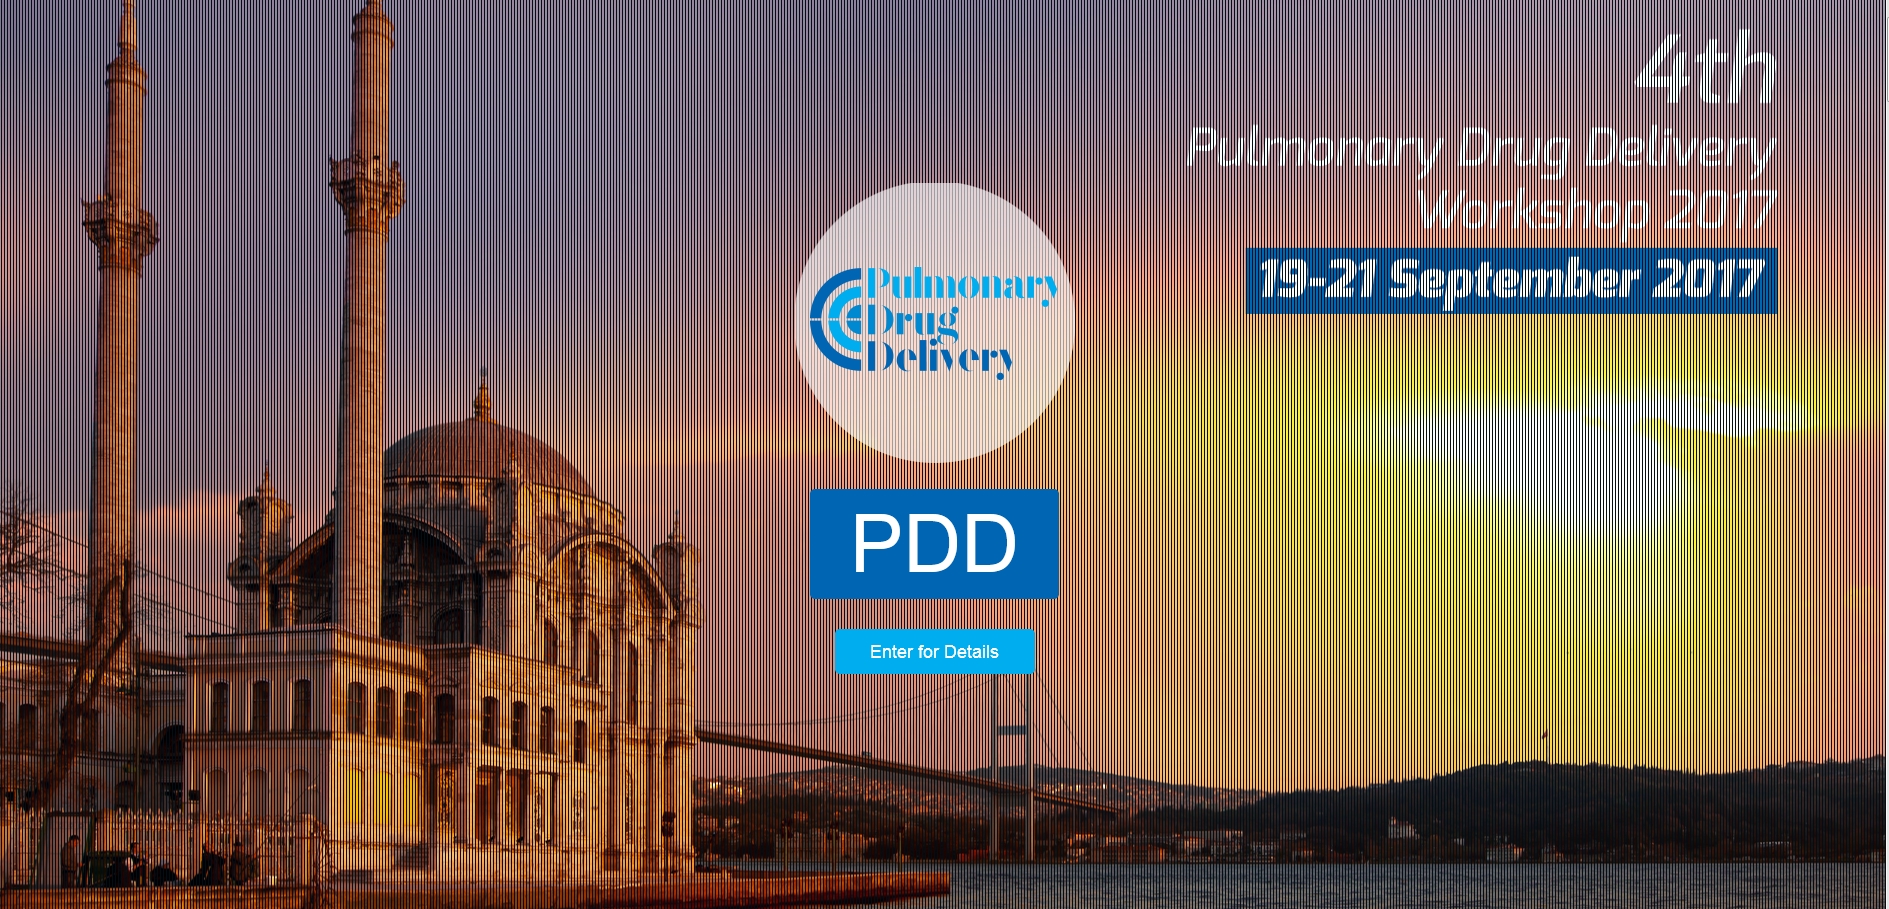 4. "Pulmonary Drug Delivery" Çalıştayı Eylül Ayında İstanbul'da Düzenleniyor